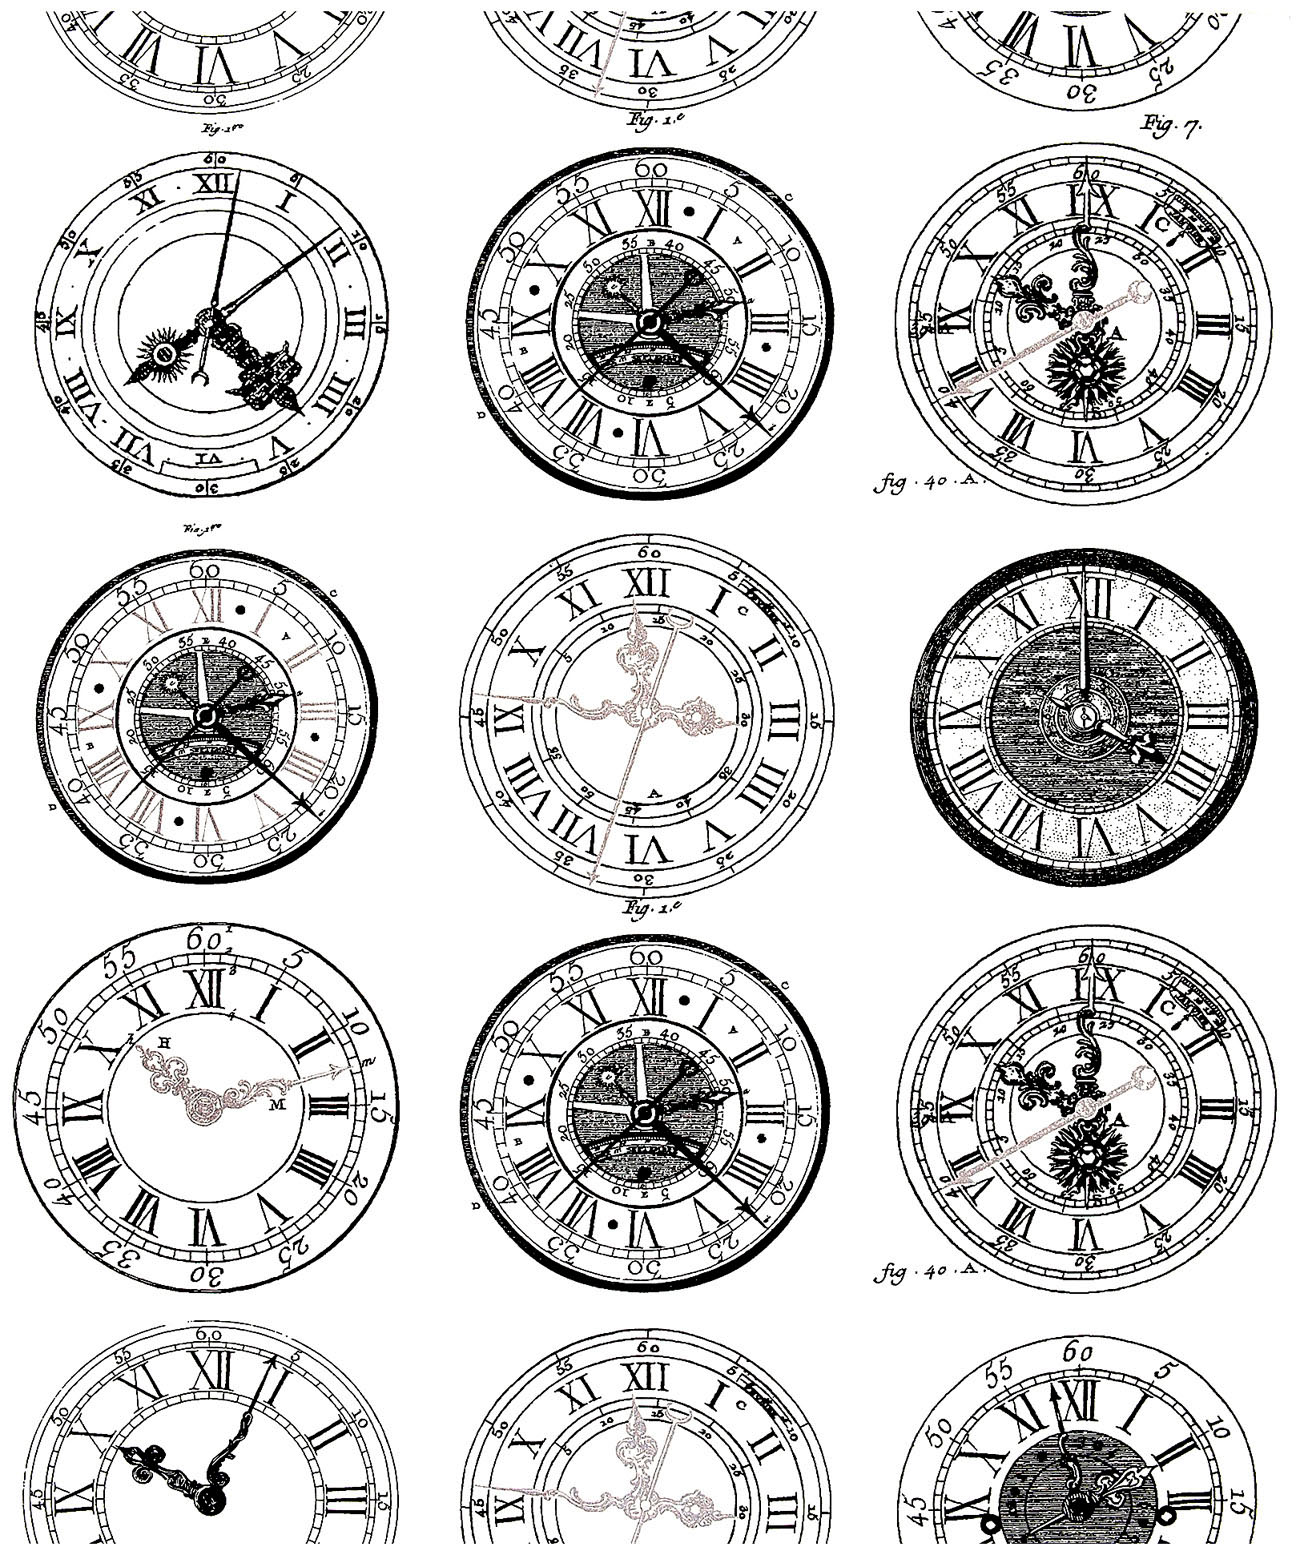 Diversi stili di orologi risalenti al XIX e al XX secolo